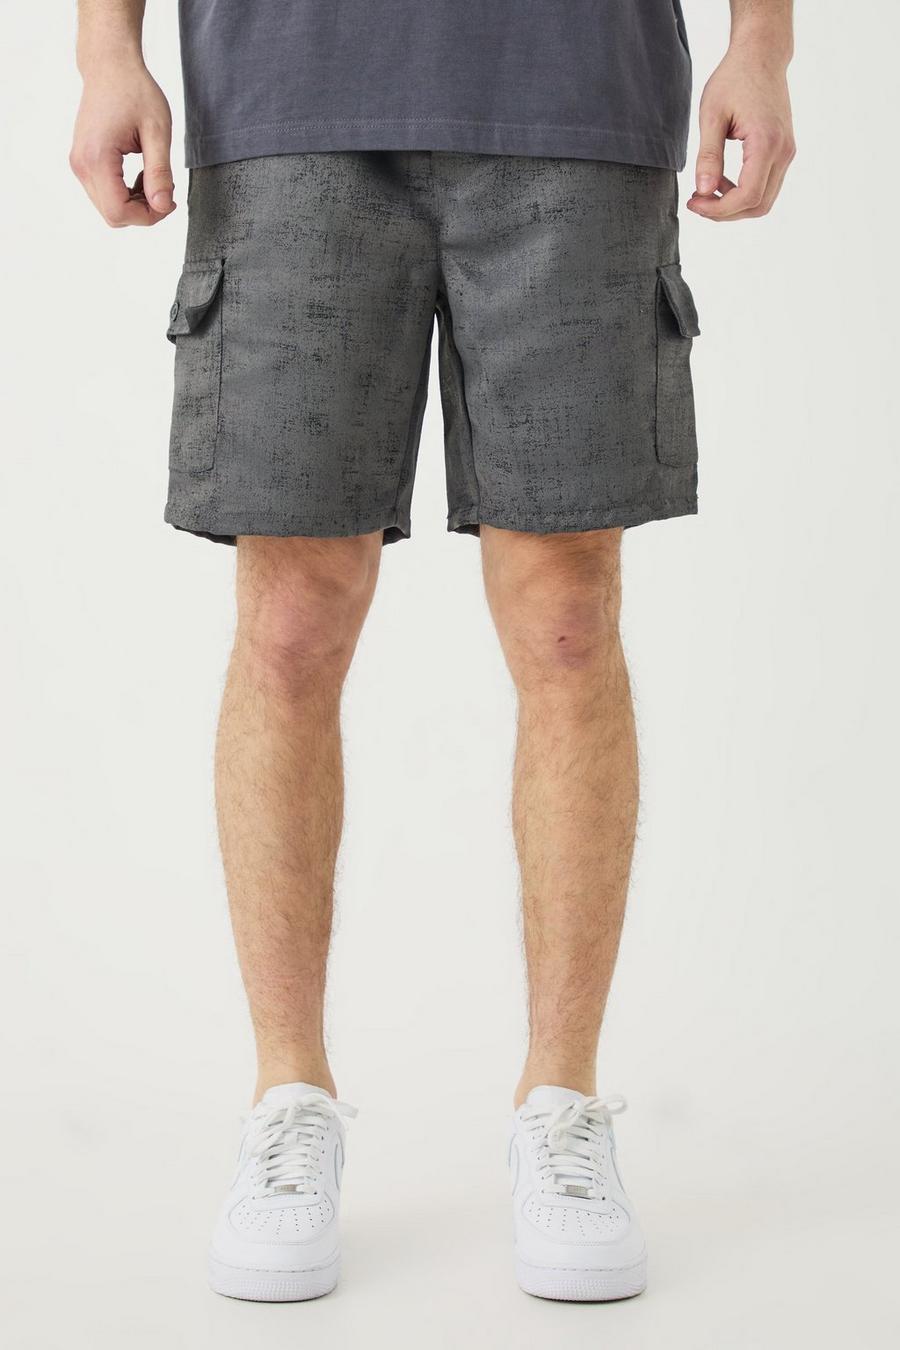 Pantalón corto Tall cargo texturizado con cintura elástica en color carbón, Charcoal